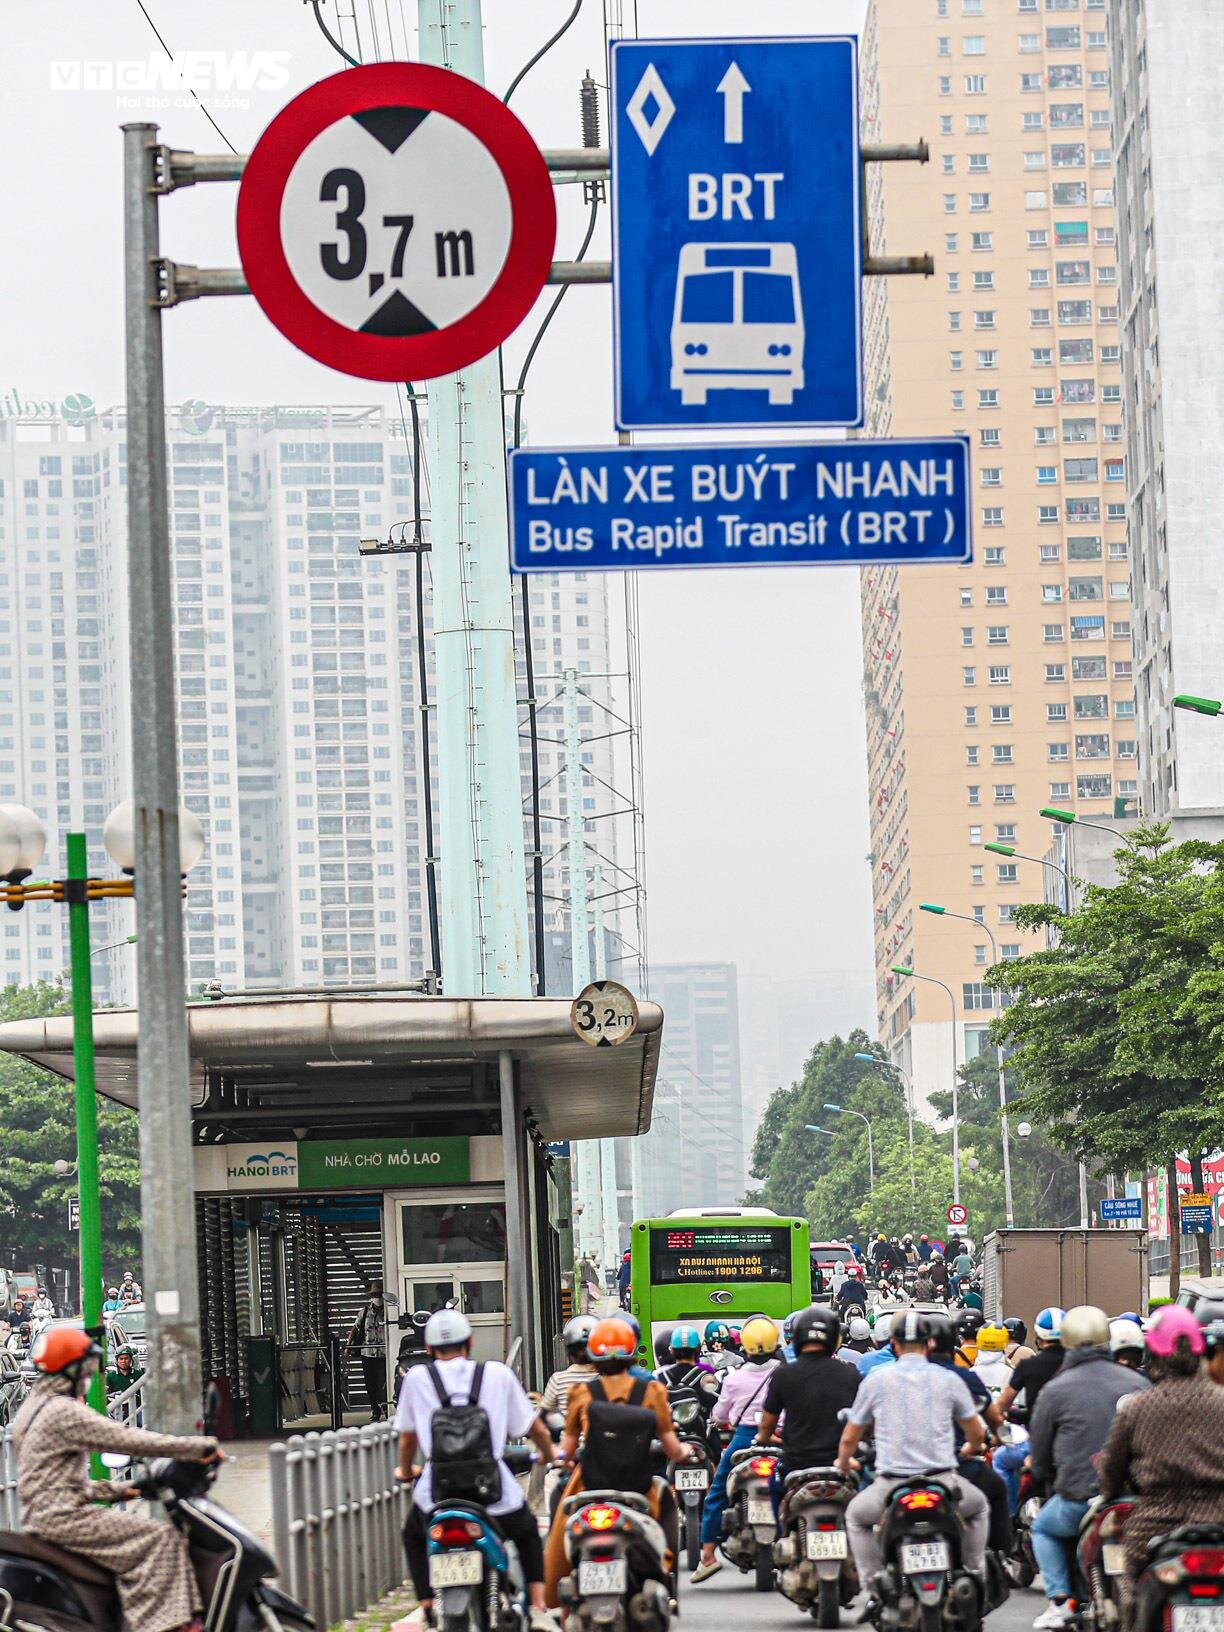 Bị cướp làn đường, buýt nhanh BRT chôn chân trên phố Hà Nội - 3